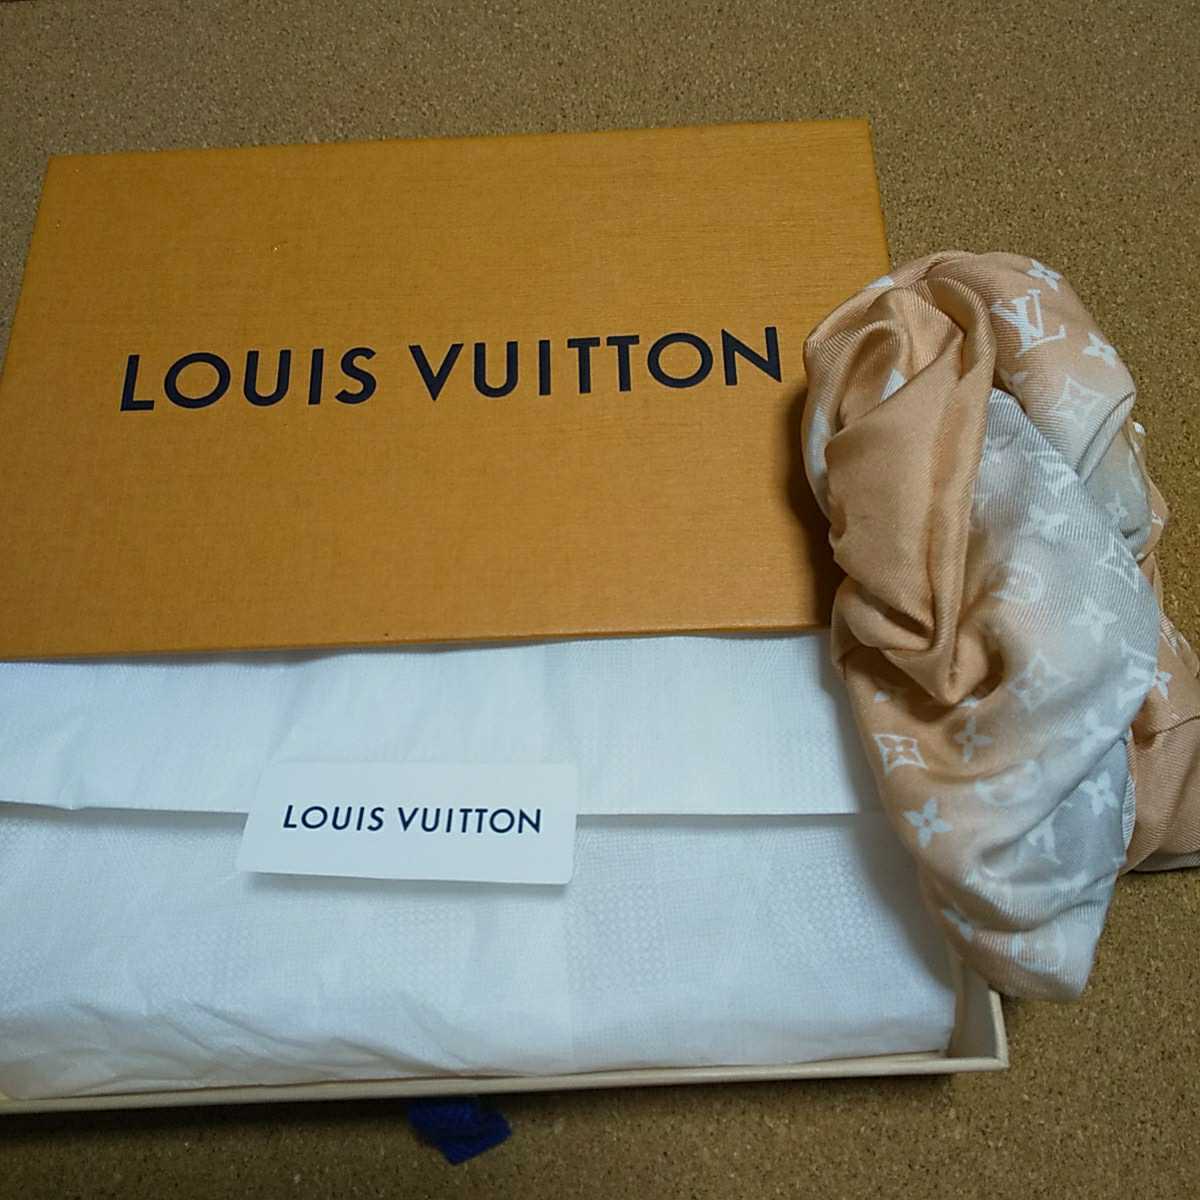 LOUIS VUITTON Louis Vuitton elastic monogram hair elastic hair accessory pink gradation 